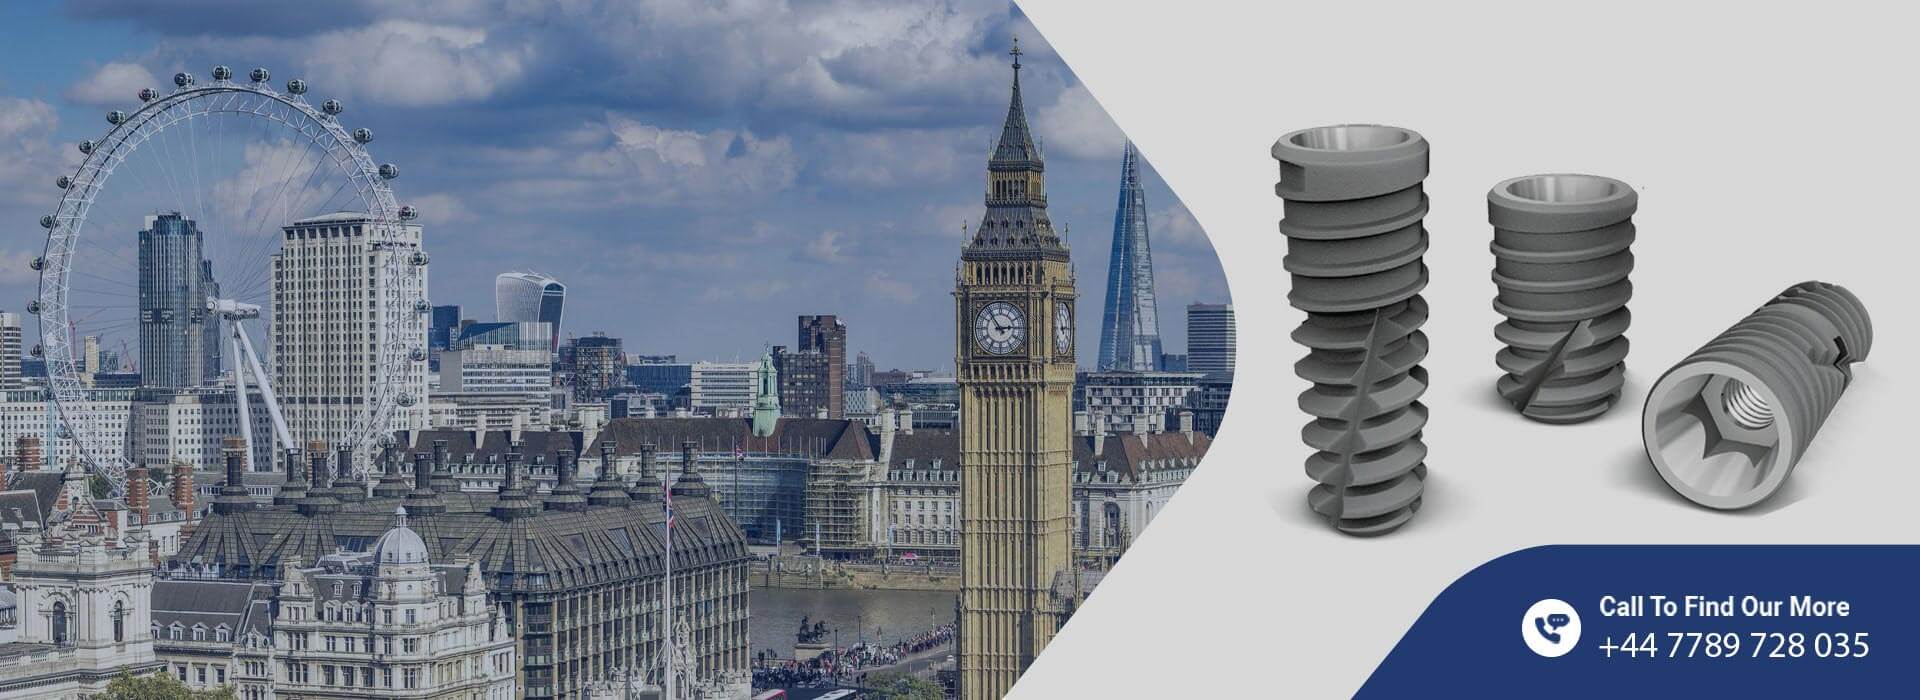 Solvo UK Implants Company